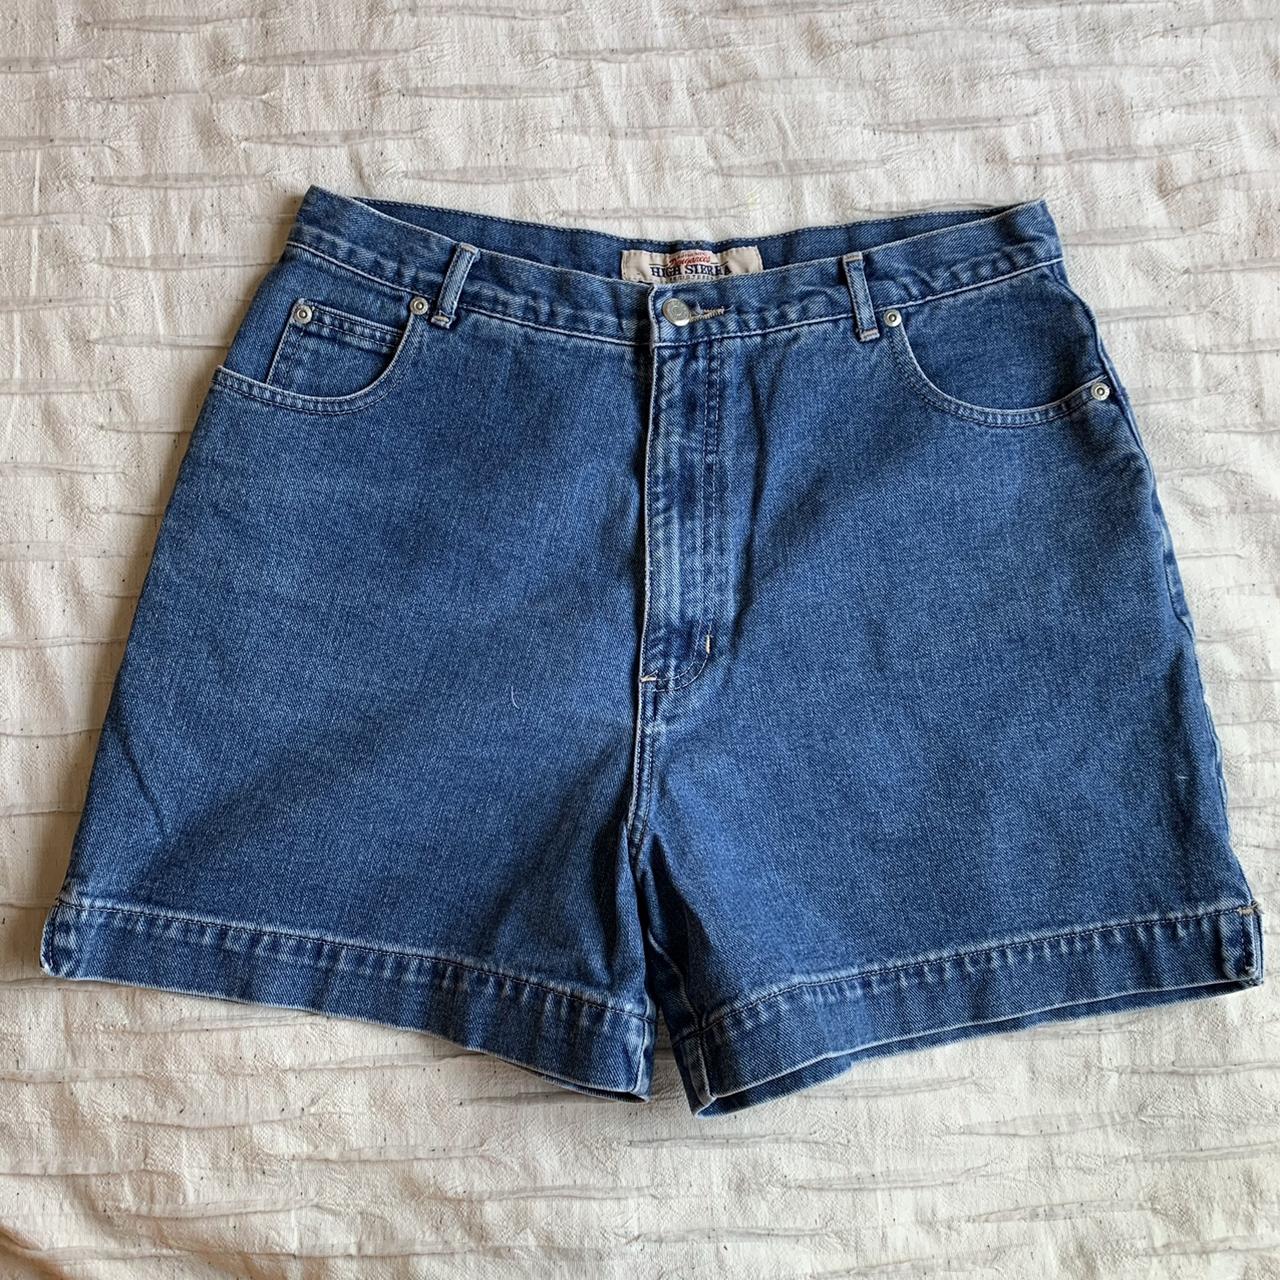 Vintage Dungarees High Sierra Shorts worn in,... - Depop